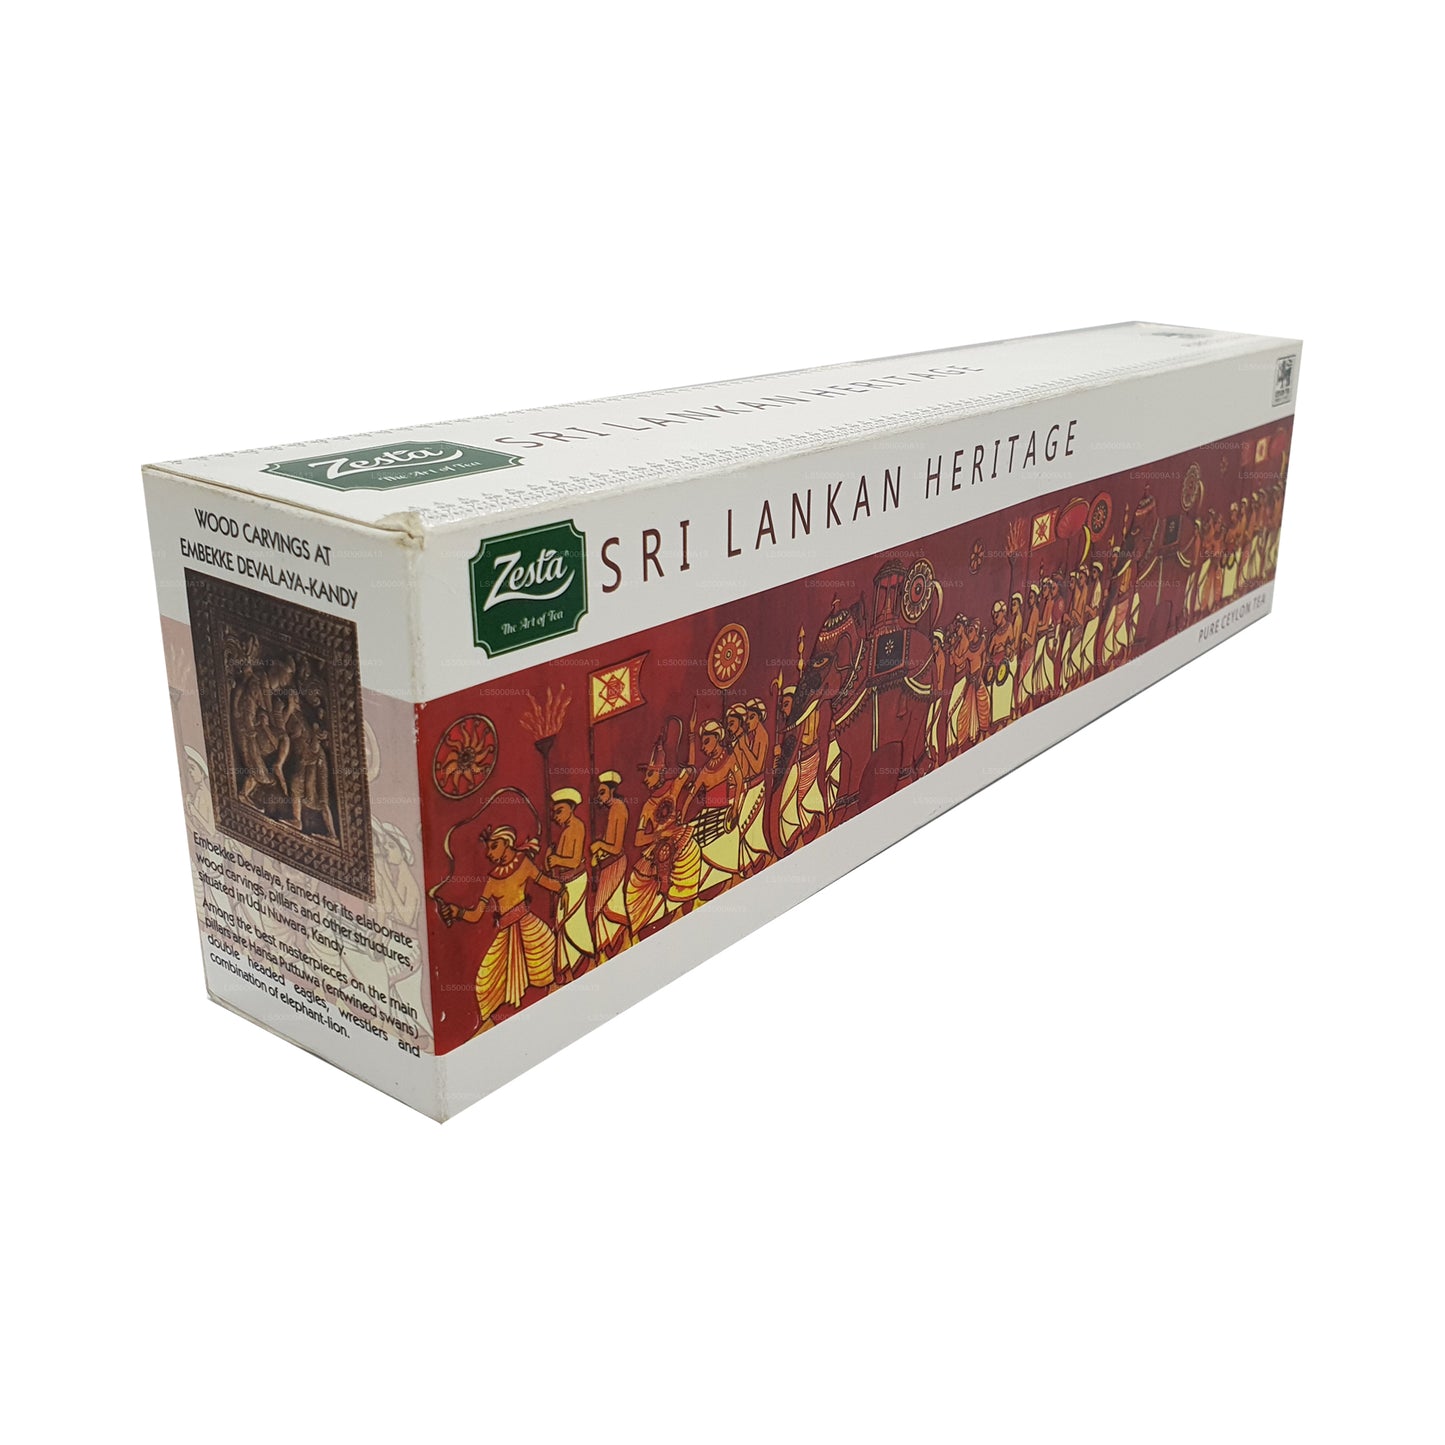 Zesta Sri Lankan Heritage Five Tea Pack (400g)